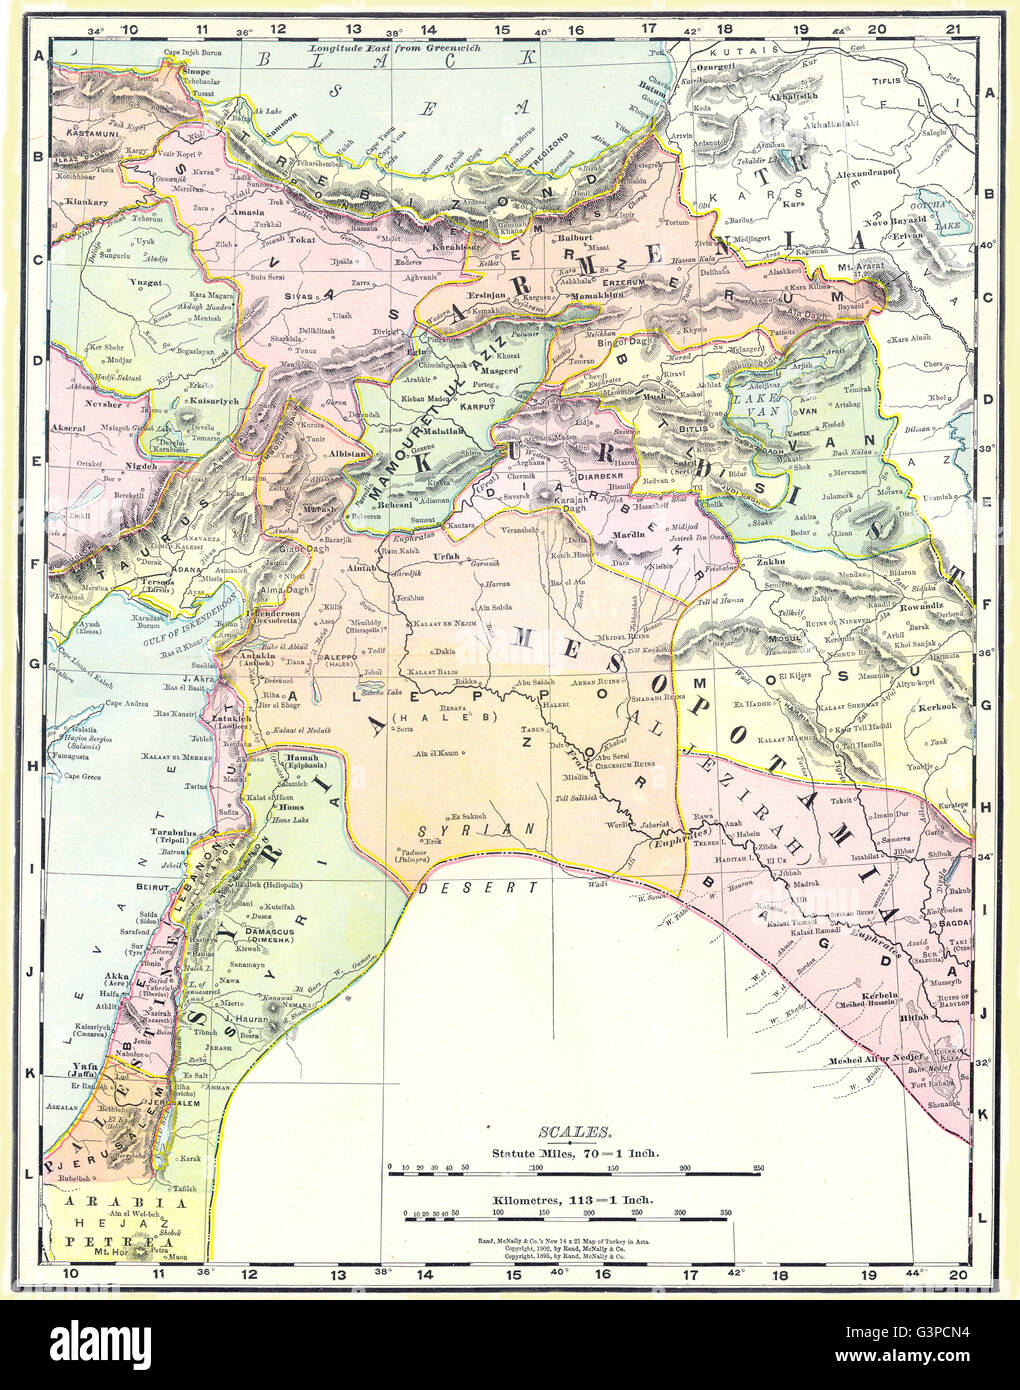 ARMENIA KURDISTAN SYRIA & MESOPOTAMIA. Iraq Turkey, 1907 antique map Stock Photo